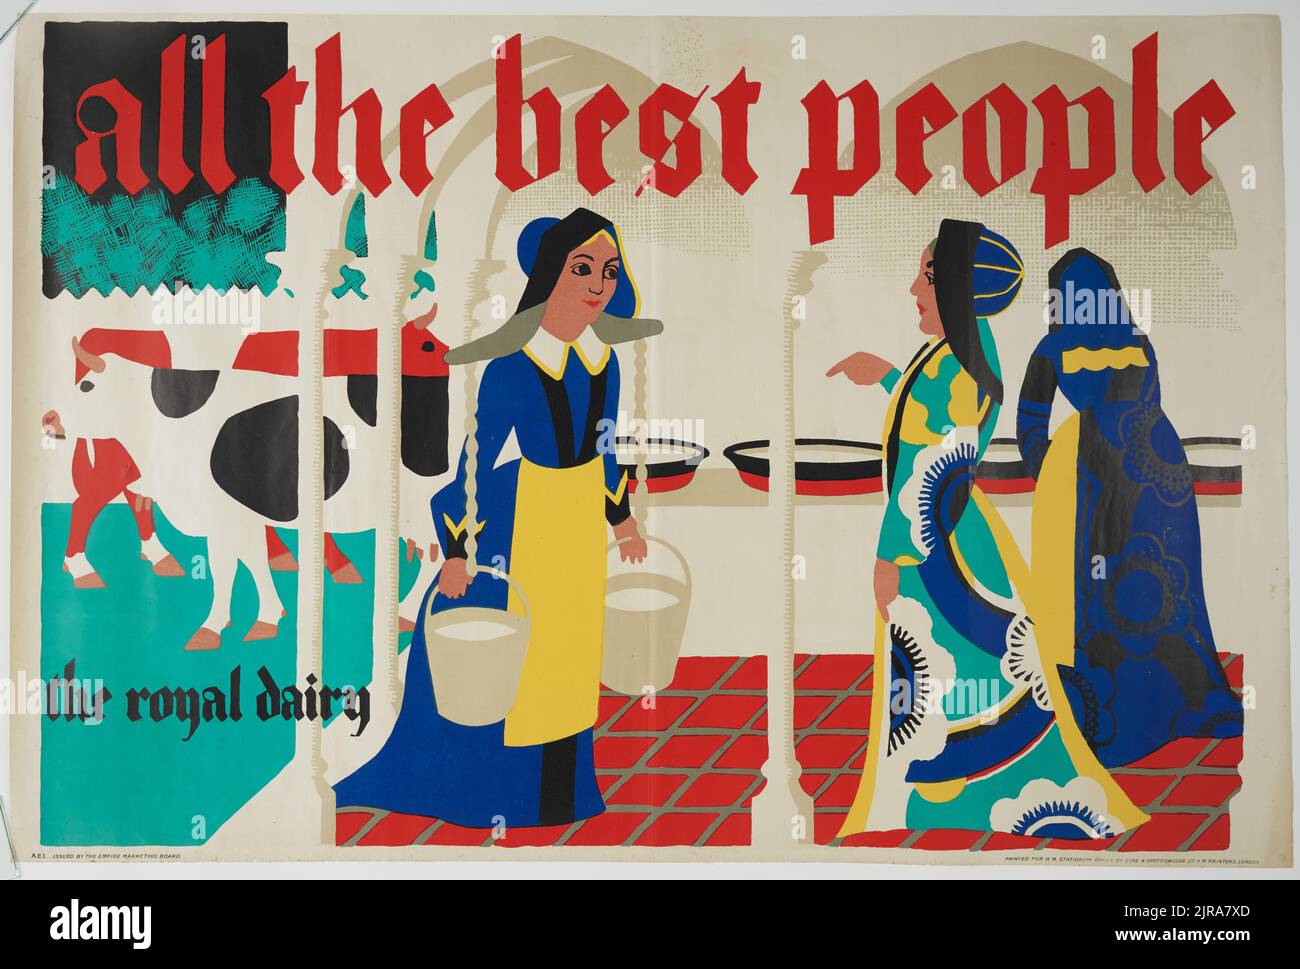 Poster, 'All the Best People', fine 1920s-inizio 1930s, Regno Unito, di Harold Williamson, Eyre & Spottismoode Ltd., H.M. Stationery Office, Empire Marketing Board. Trovato nella collezione, 2012. Foto Stock